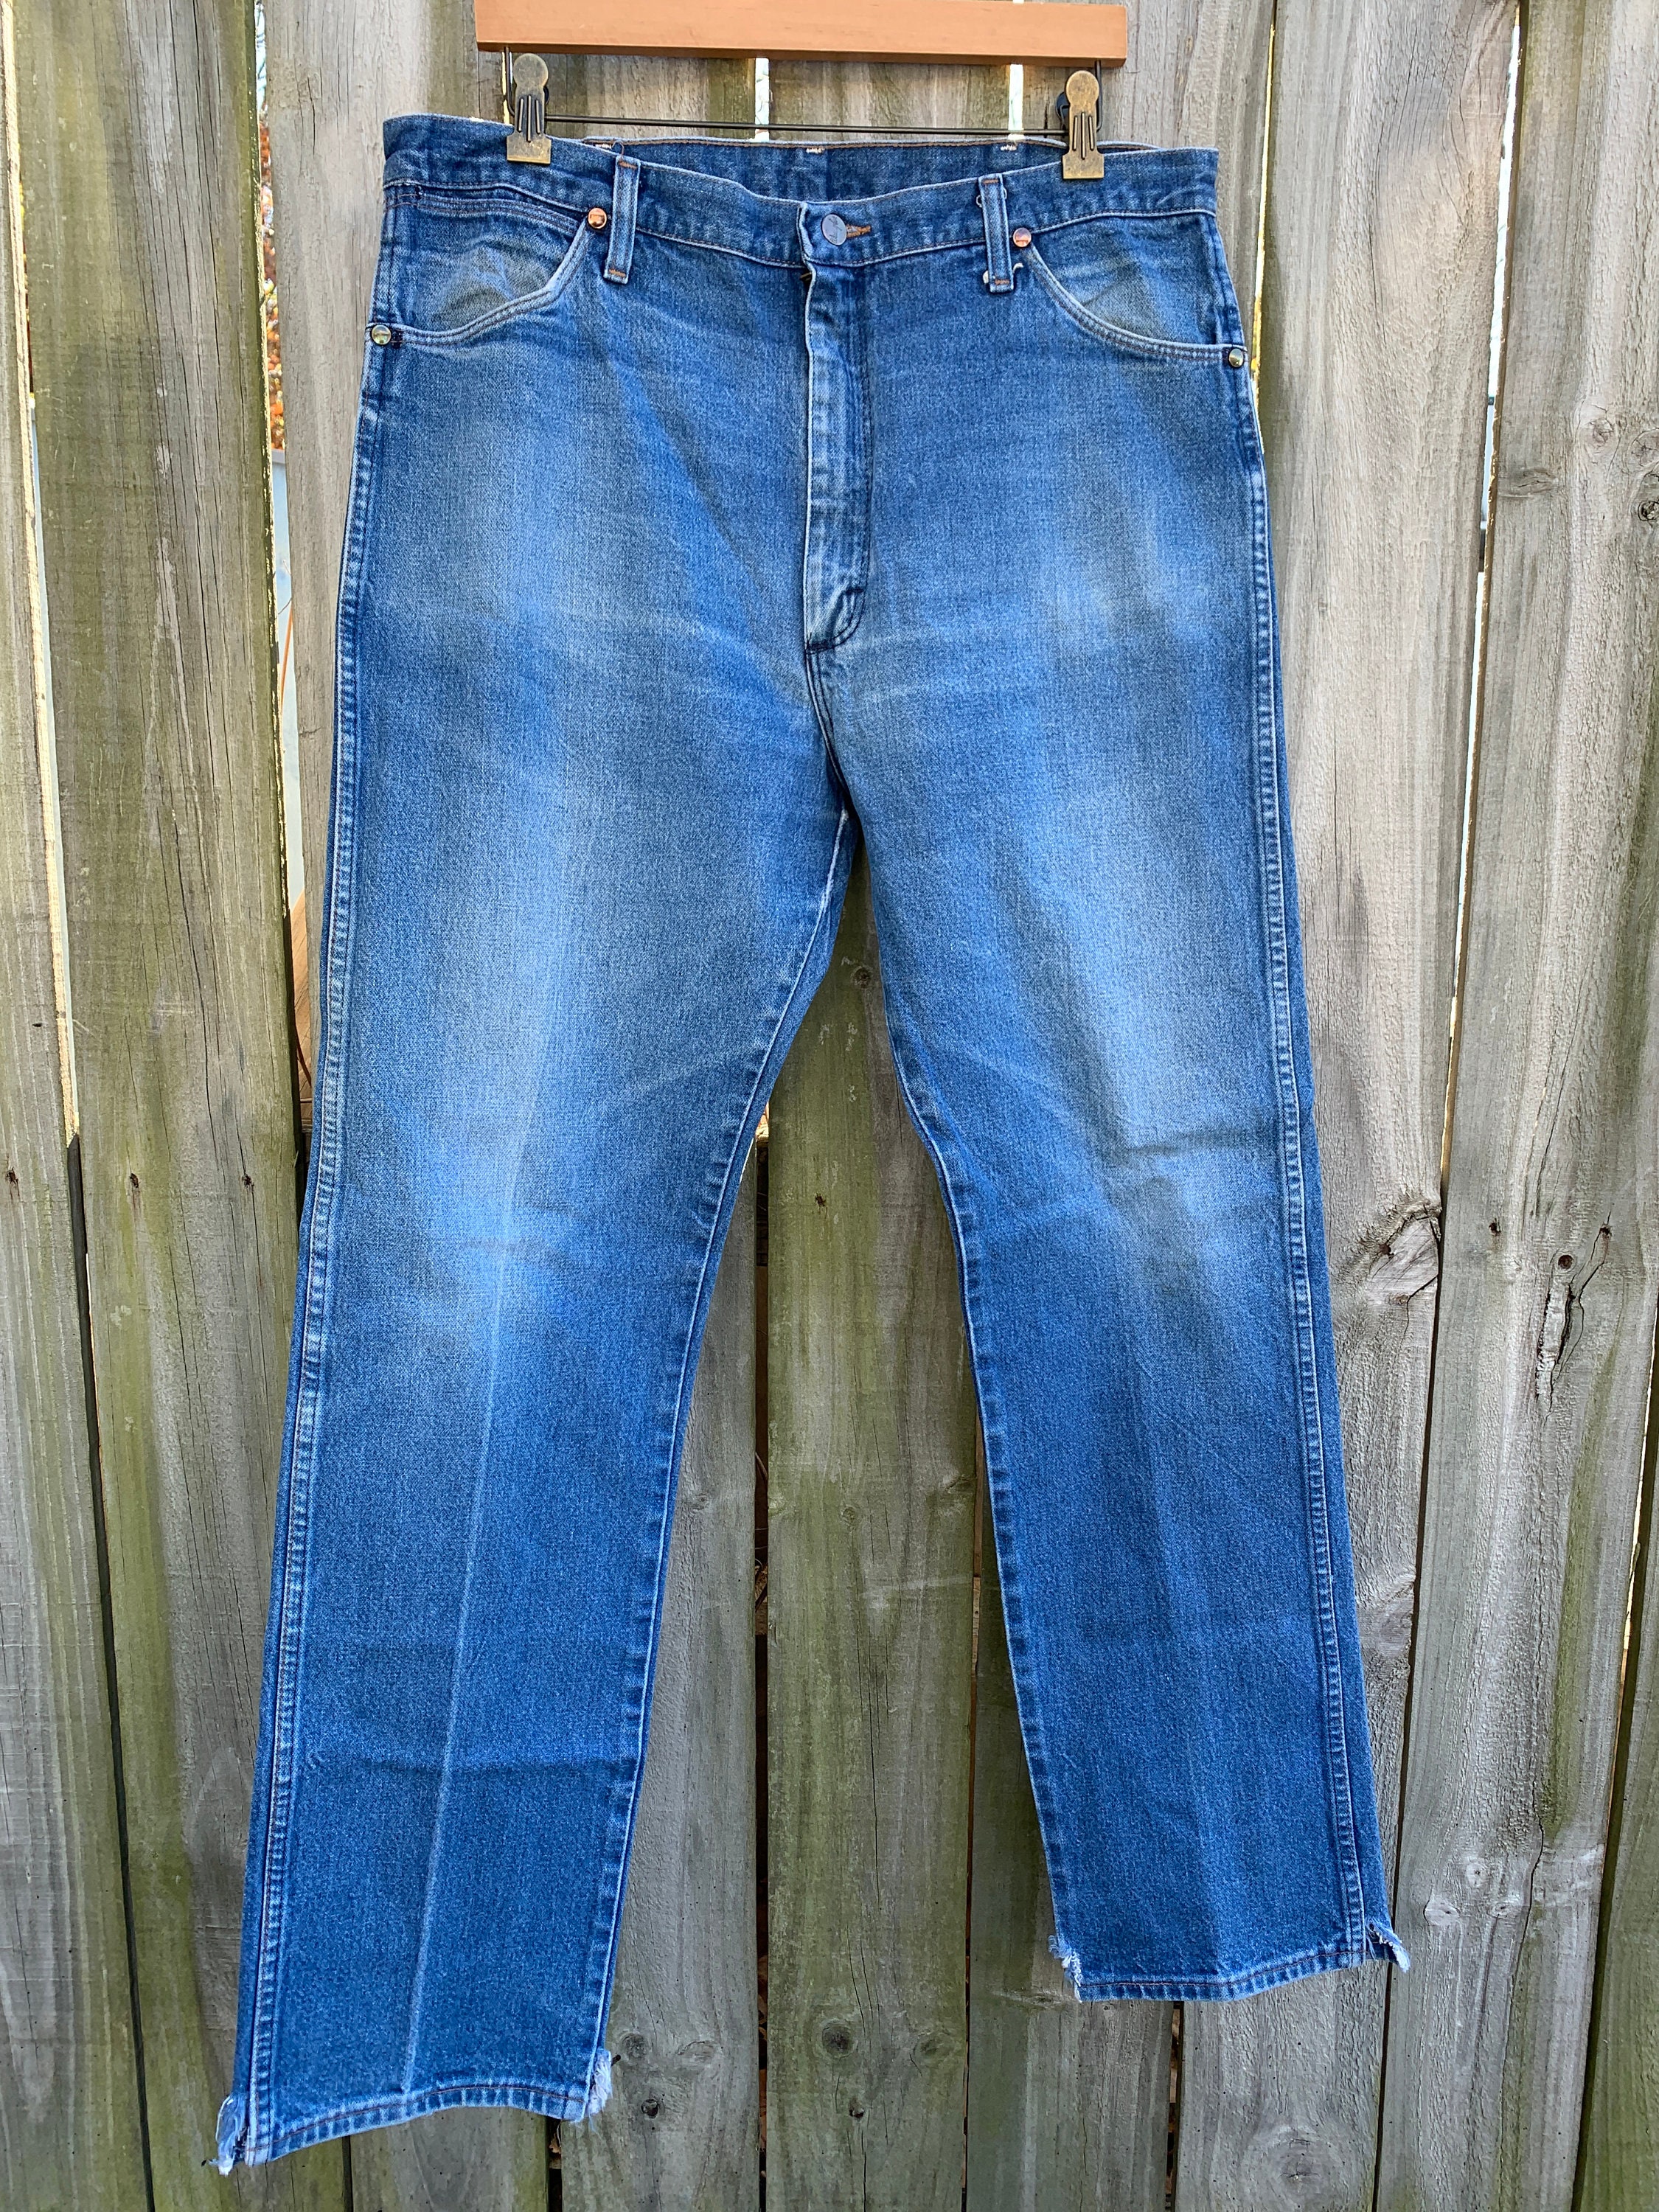 90s wrangler 13mwz medium wash denim jeans size 37 x 33